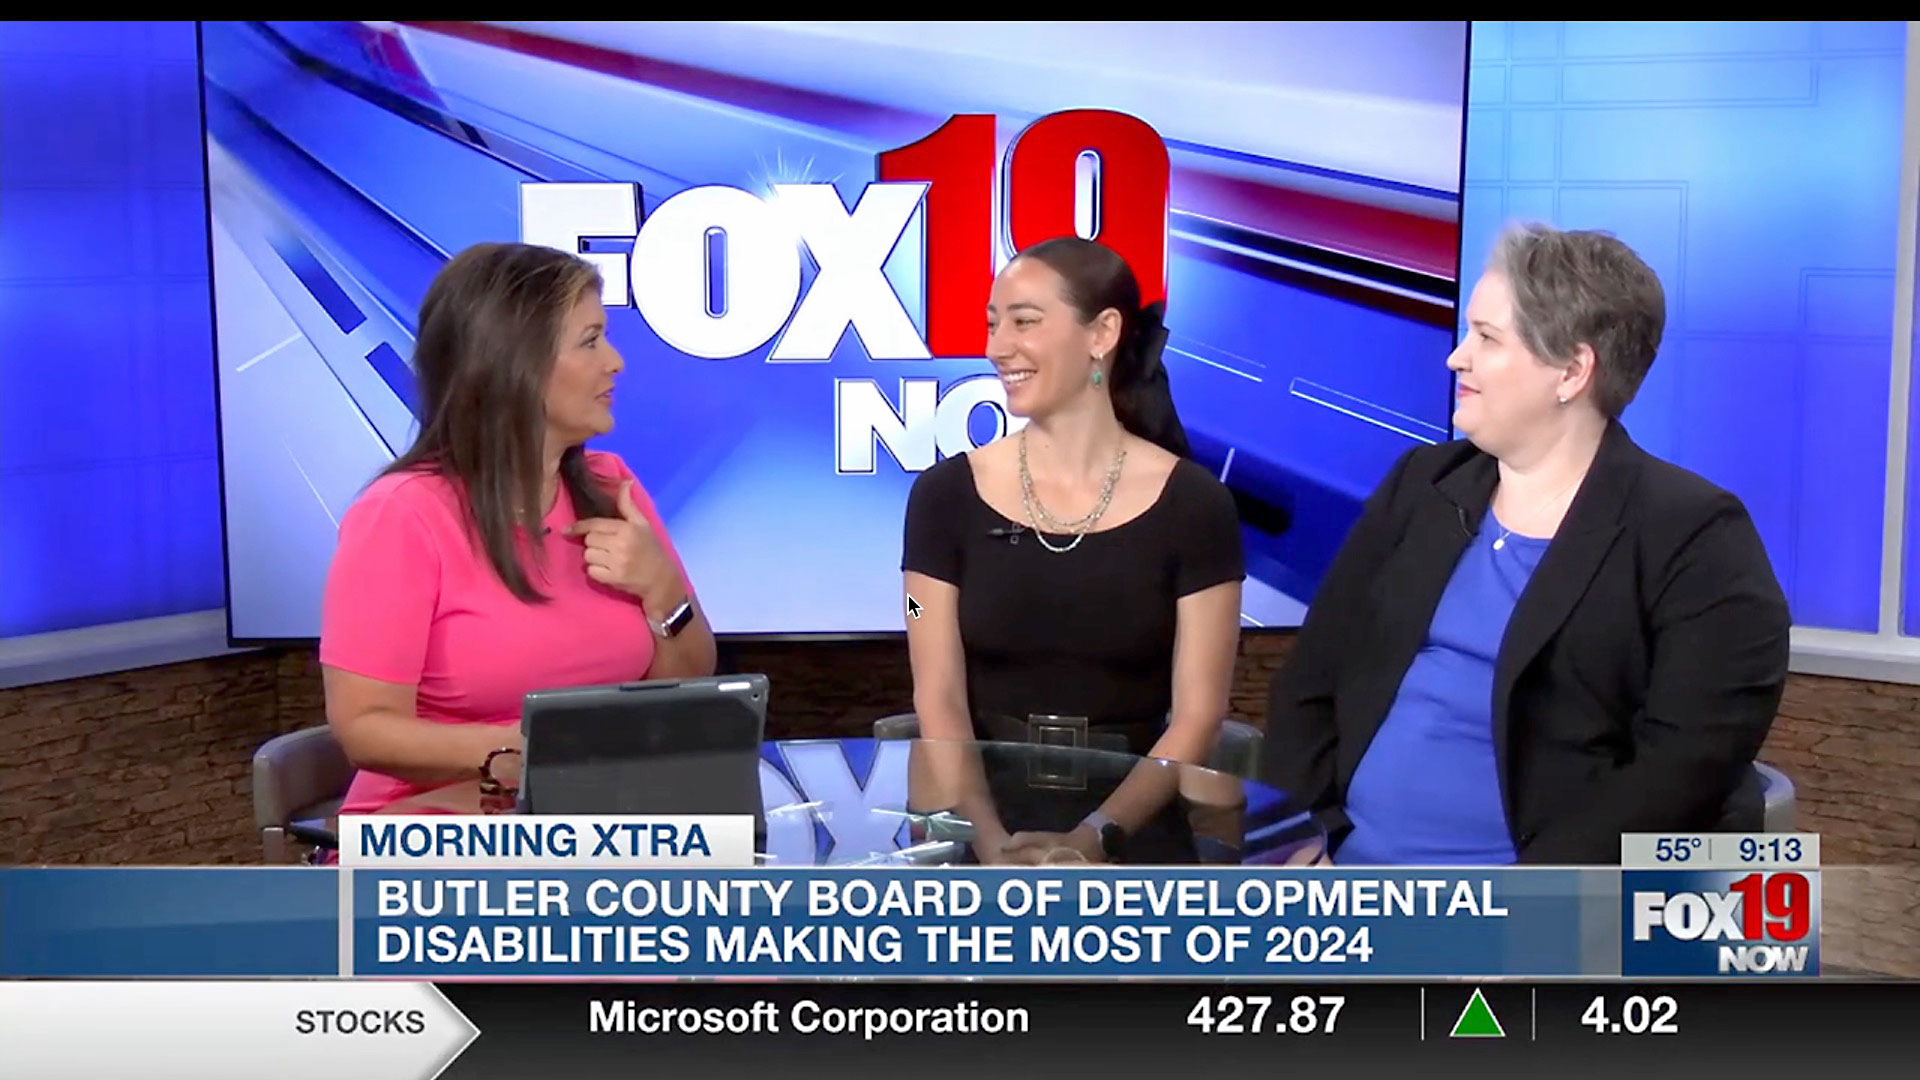 Cassie Mattia interviewed by Julie ONeill on Fox 19 [Video]